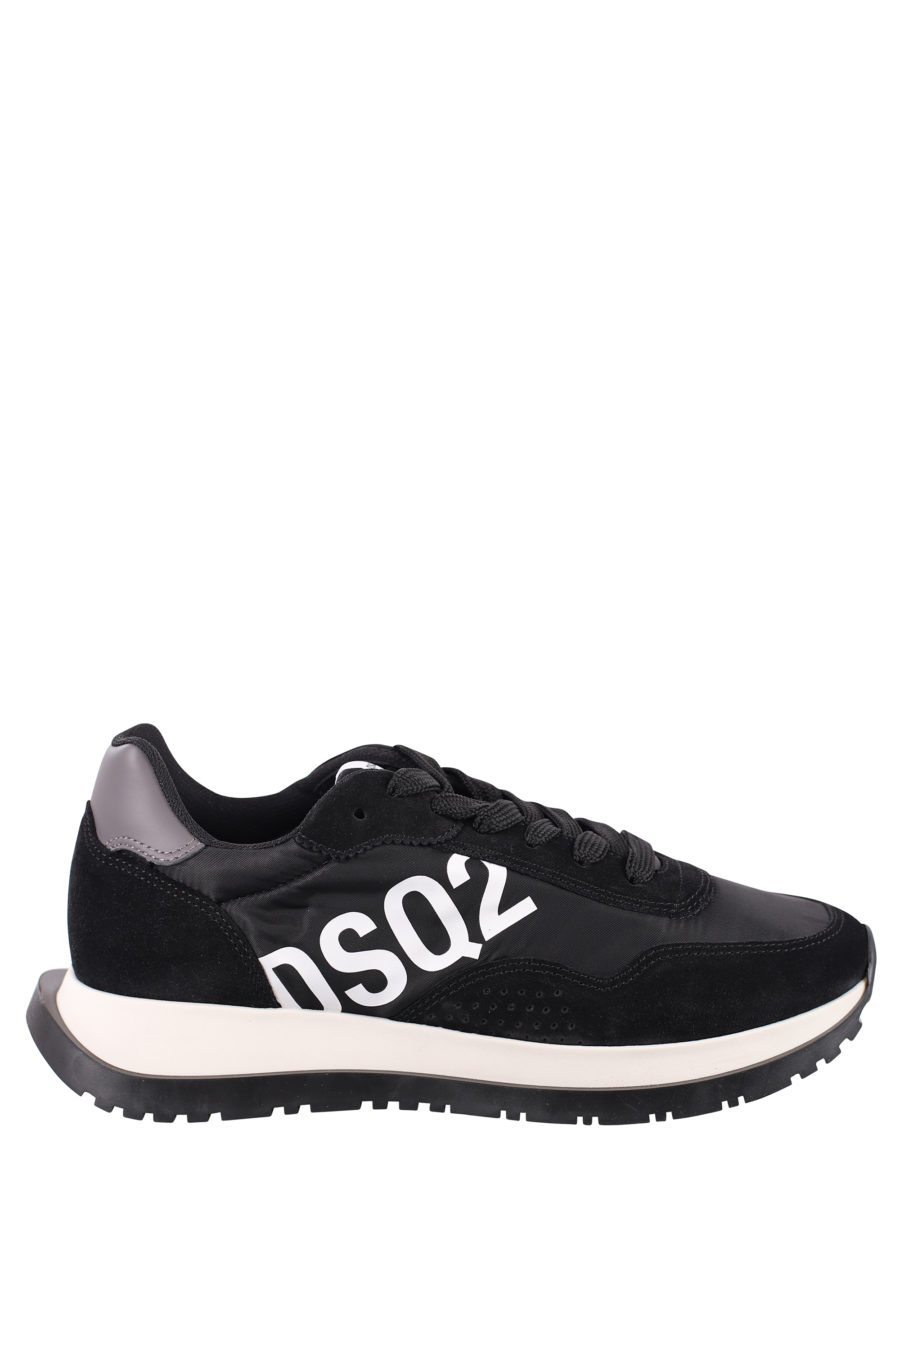 Zapatillas negras con logo diagonal blanco - IMG 0701